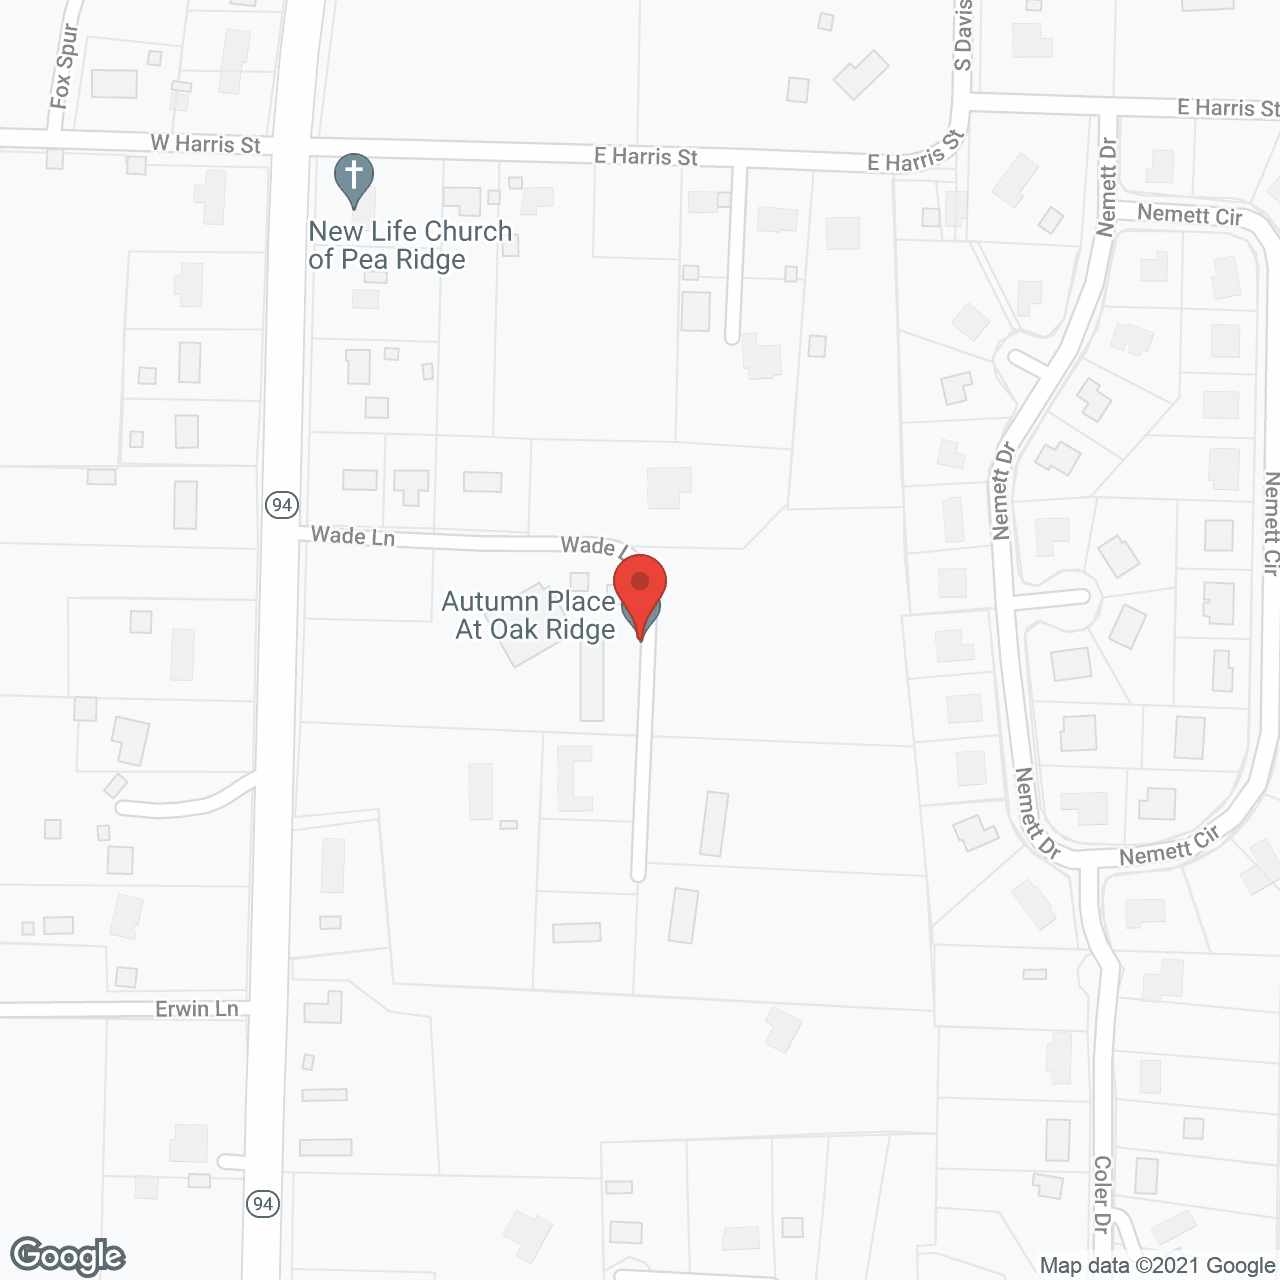 Oak Ridge Village in google map